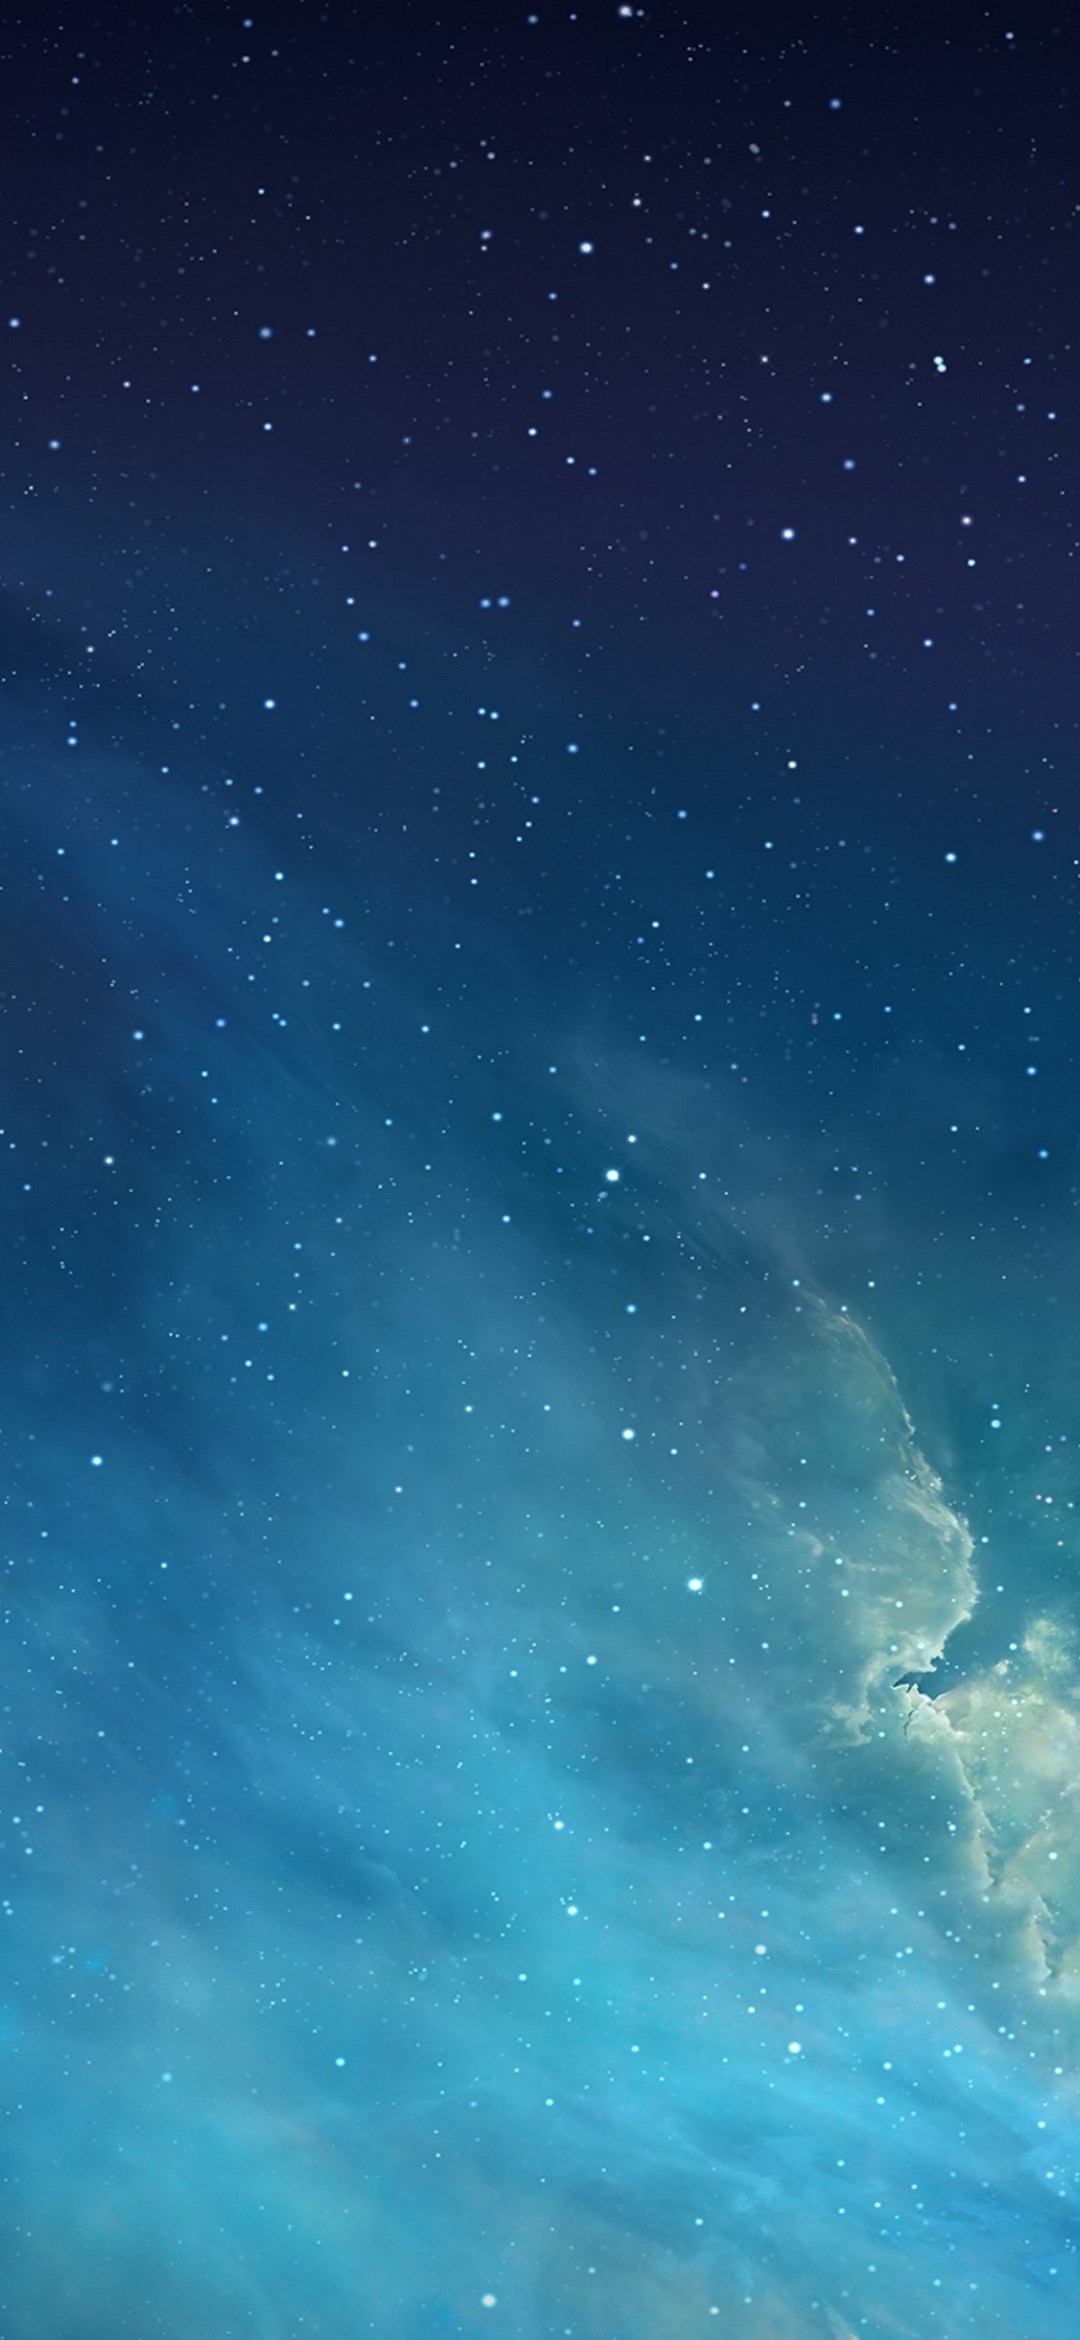 水色と青のグラデーションの星空 Zenfone 6 Android 壁紙 待ち受け Sumaran